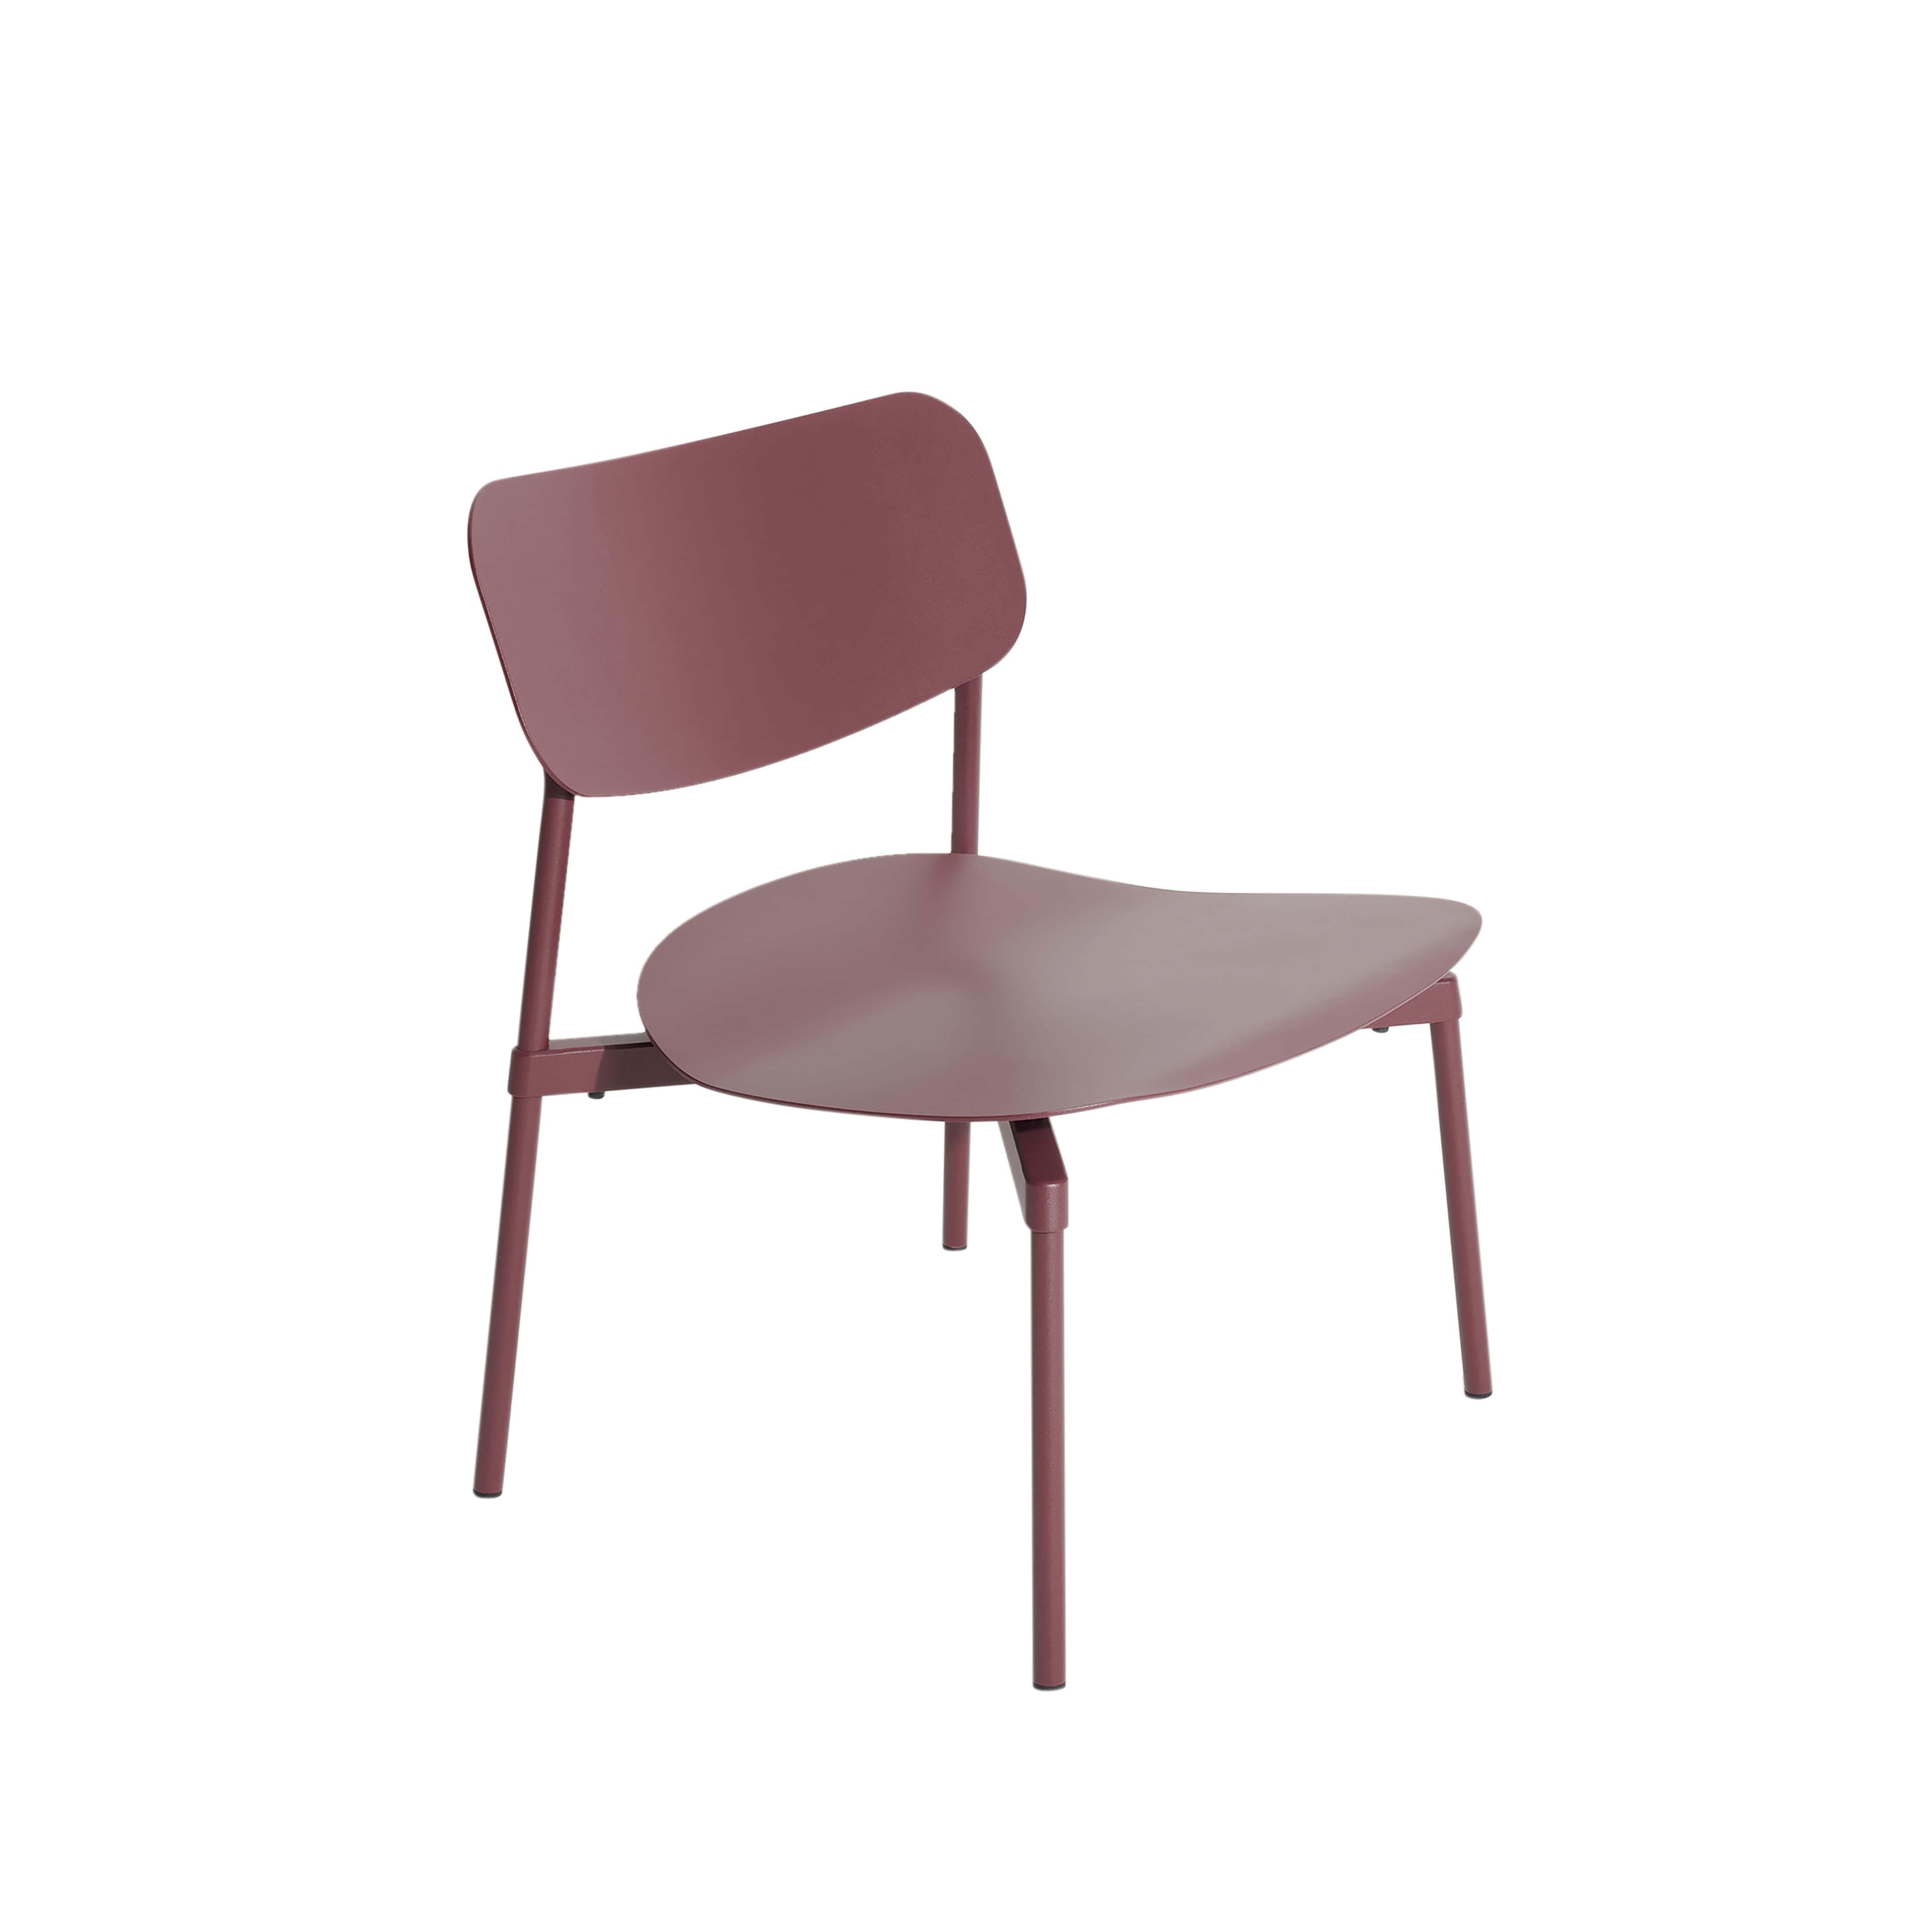 Petite Friture Fromme Lounge Armchair in Brown-red Aluminium by Tom Chung, 2020

La collection S/One se distingue par sa ligne épurée et son design compact. Les absorbeurs placés sous les sièges leur confèrent une flexibilité douce et très